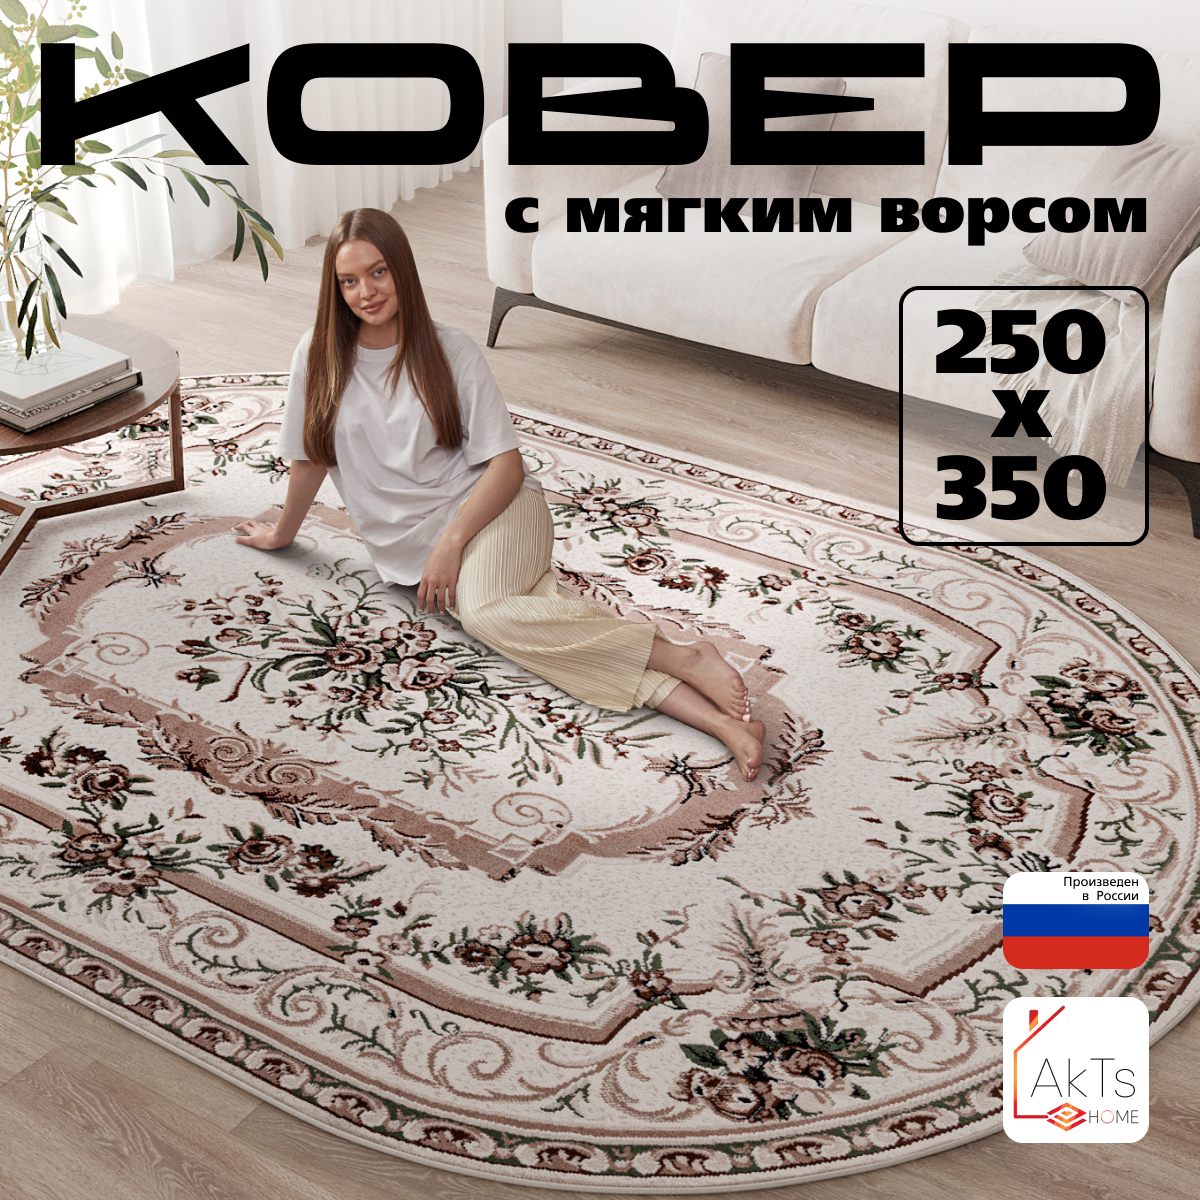 Российский овальный ковер на пол 250 на 350 см в гостиную, зал, спальню, кухню, детскую, прихожую, кабинет, комнату